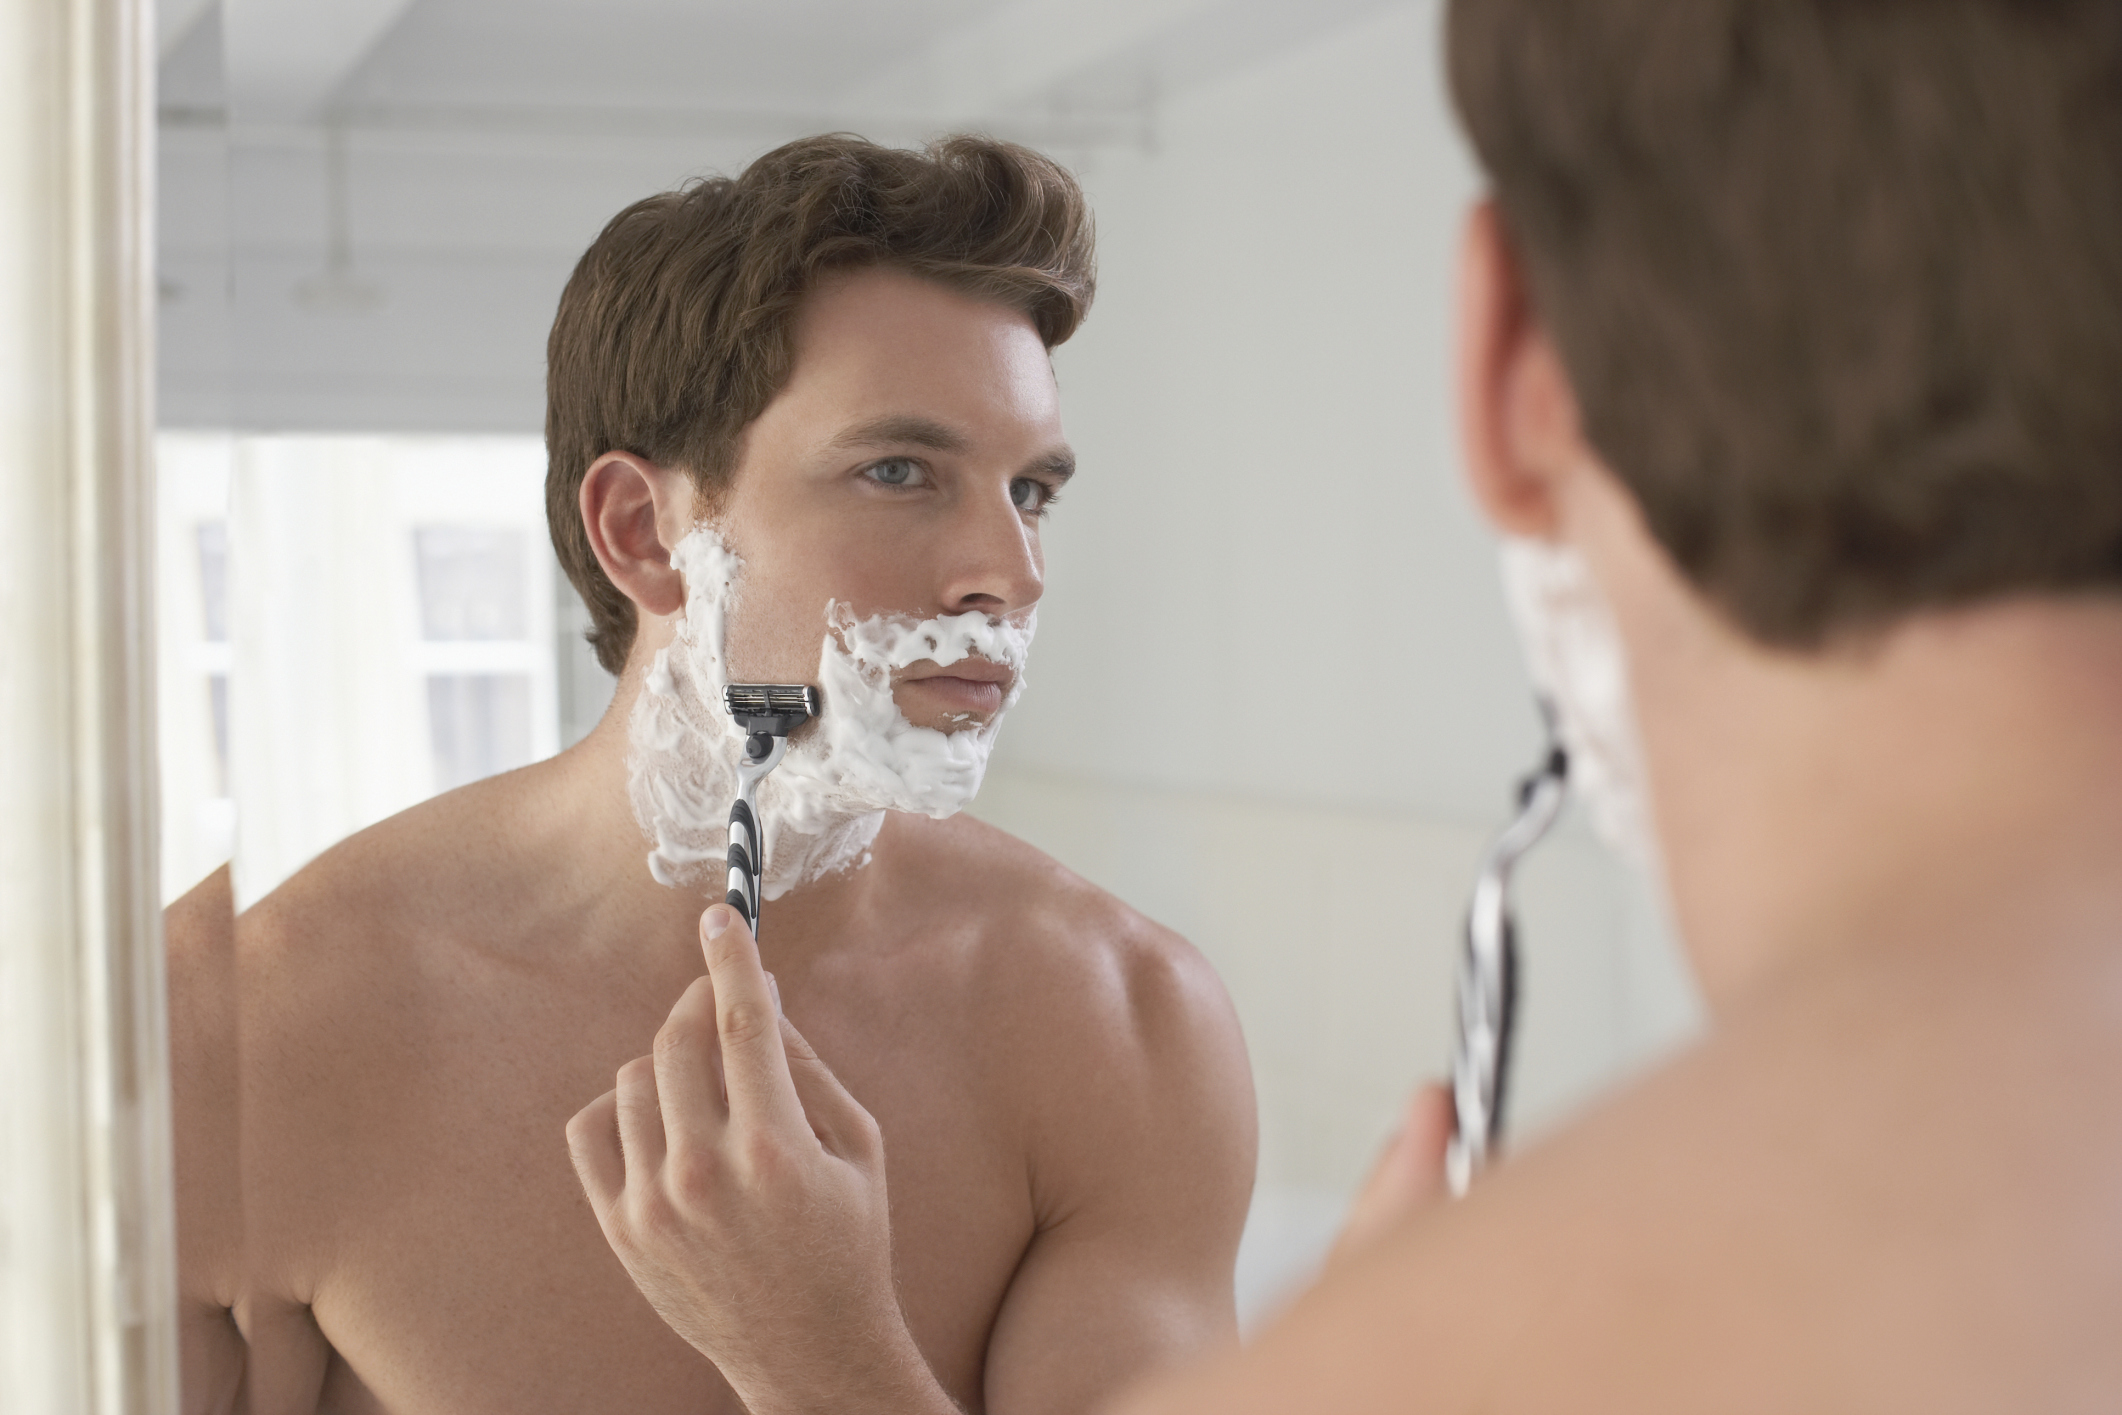 Идеально бритая. Мужчина бреется. Бритья для мужчин. Гладкое бритье. Мужик с бритвой.